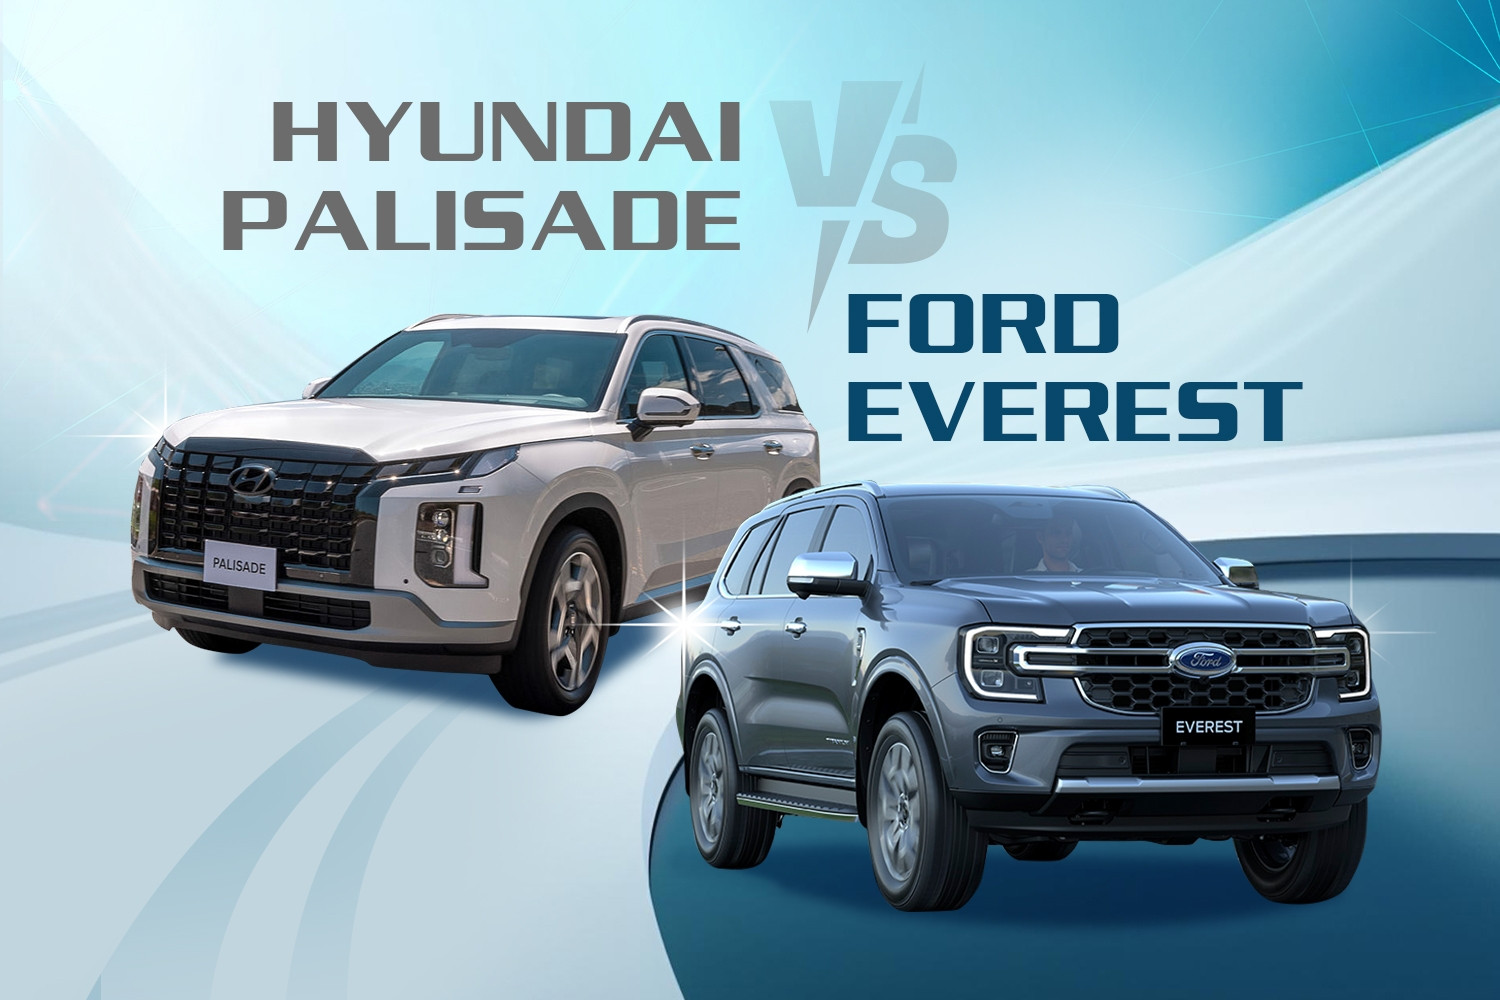 Xe SUV giá khoảng 1,5 tỷ đồng, chọn Hyundai Palisade hay Ford Everest?